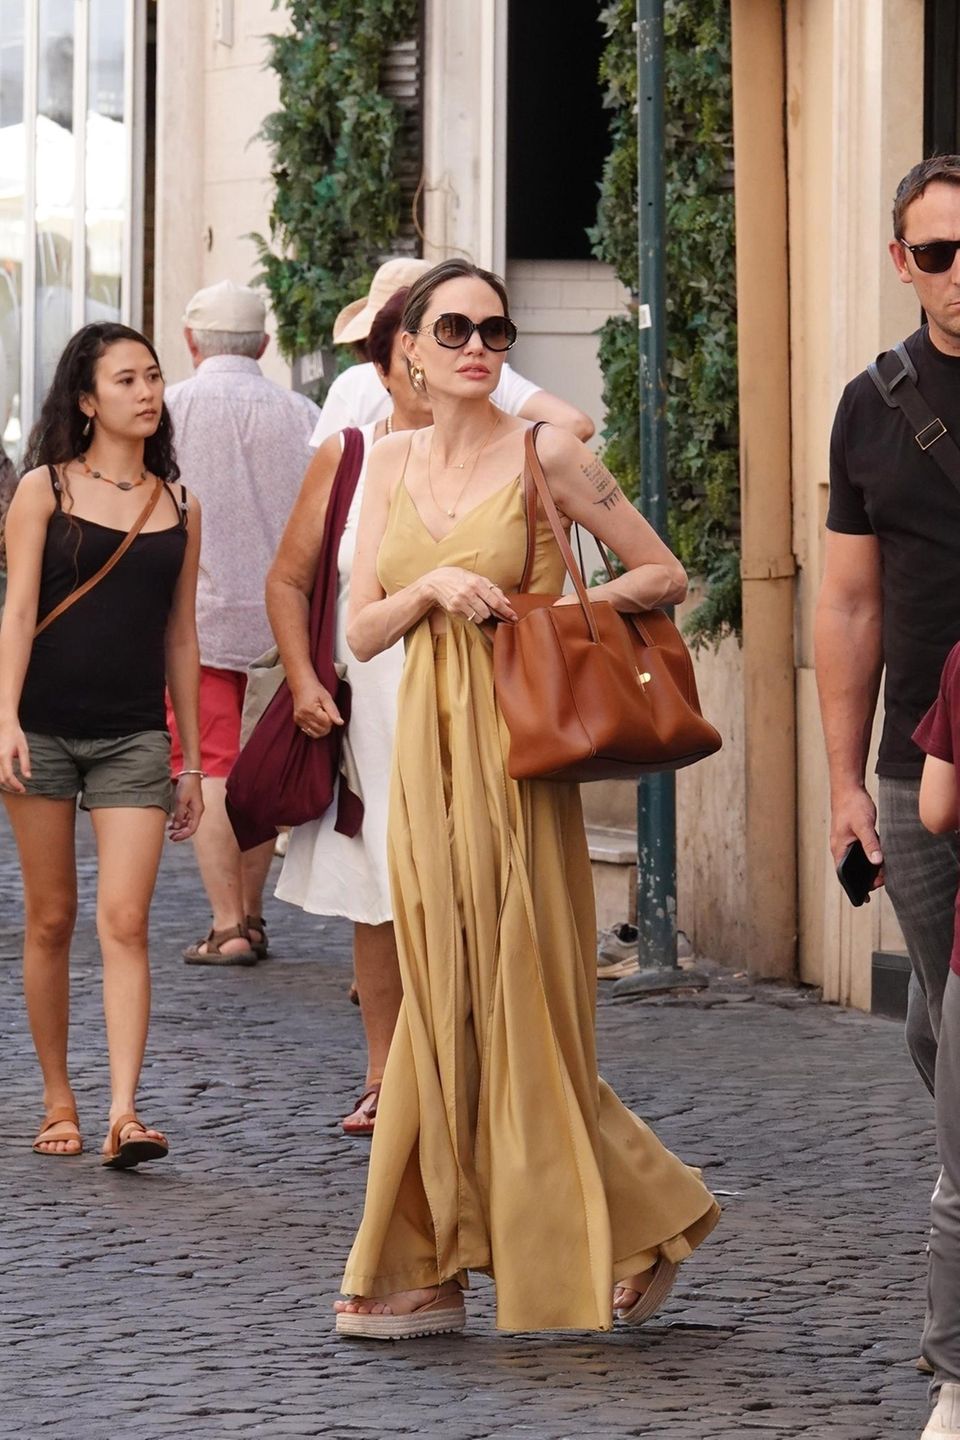 Angelina Jolie verbringt gerade ein paar Tage mit ihren Kindern in Rom – inklusive Shoppingtrip. Auf den ersten Blick scheint sie auf ein senffarbenes Maxikleid zu setzen. Doch wer das Outfit genauer unter die Lupe nimmt, dem fällt eine Sache auf: Bei ihrem Outfit handelt es sich gar nicht um ein Kleid. Angelina setzt auf eine Hose und ein farblich passendes Top mit bodenlangen Details, die an ein Kleid erinnern. Ein raffinierter Trick, der Glamour und Komfort verbindet.